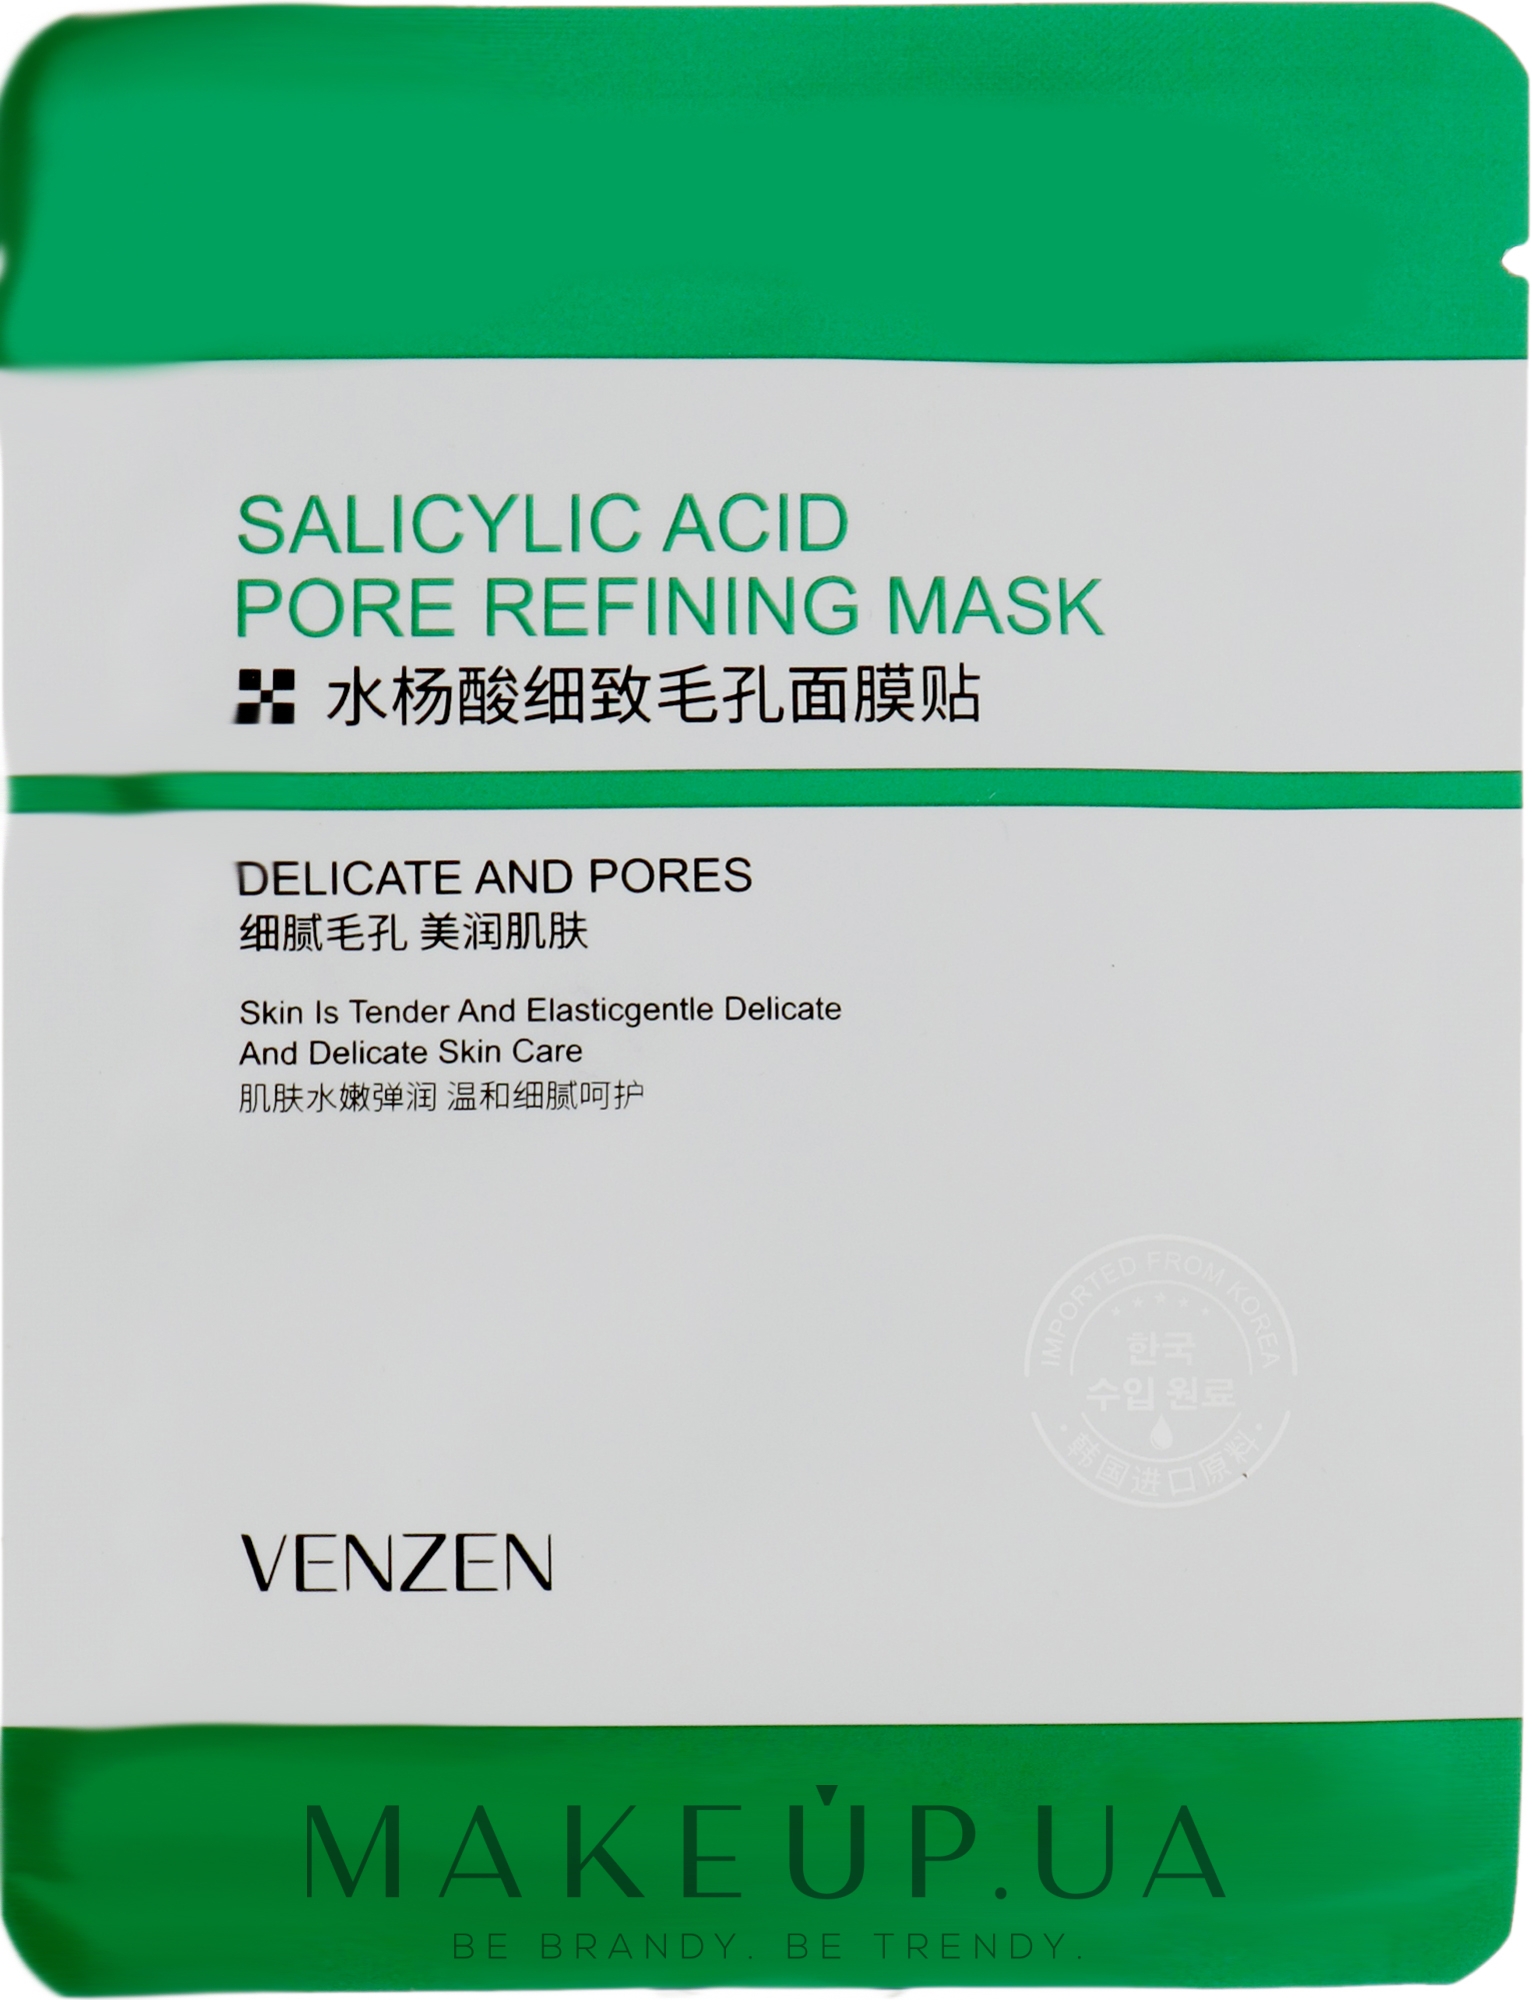 Тканевая маска для проблемной кожи с салициловой кислотой - Veze (Venzen) Salicylic Acid Pore Refining Mask — фото 25g